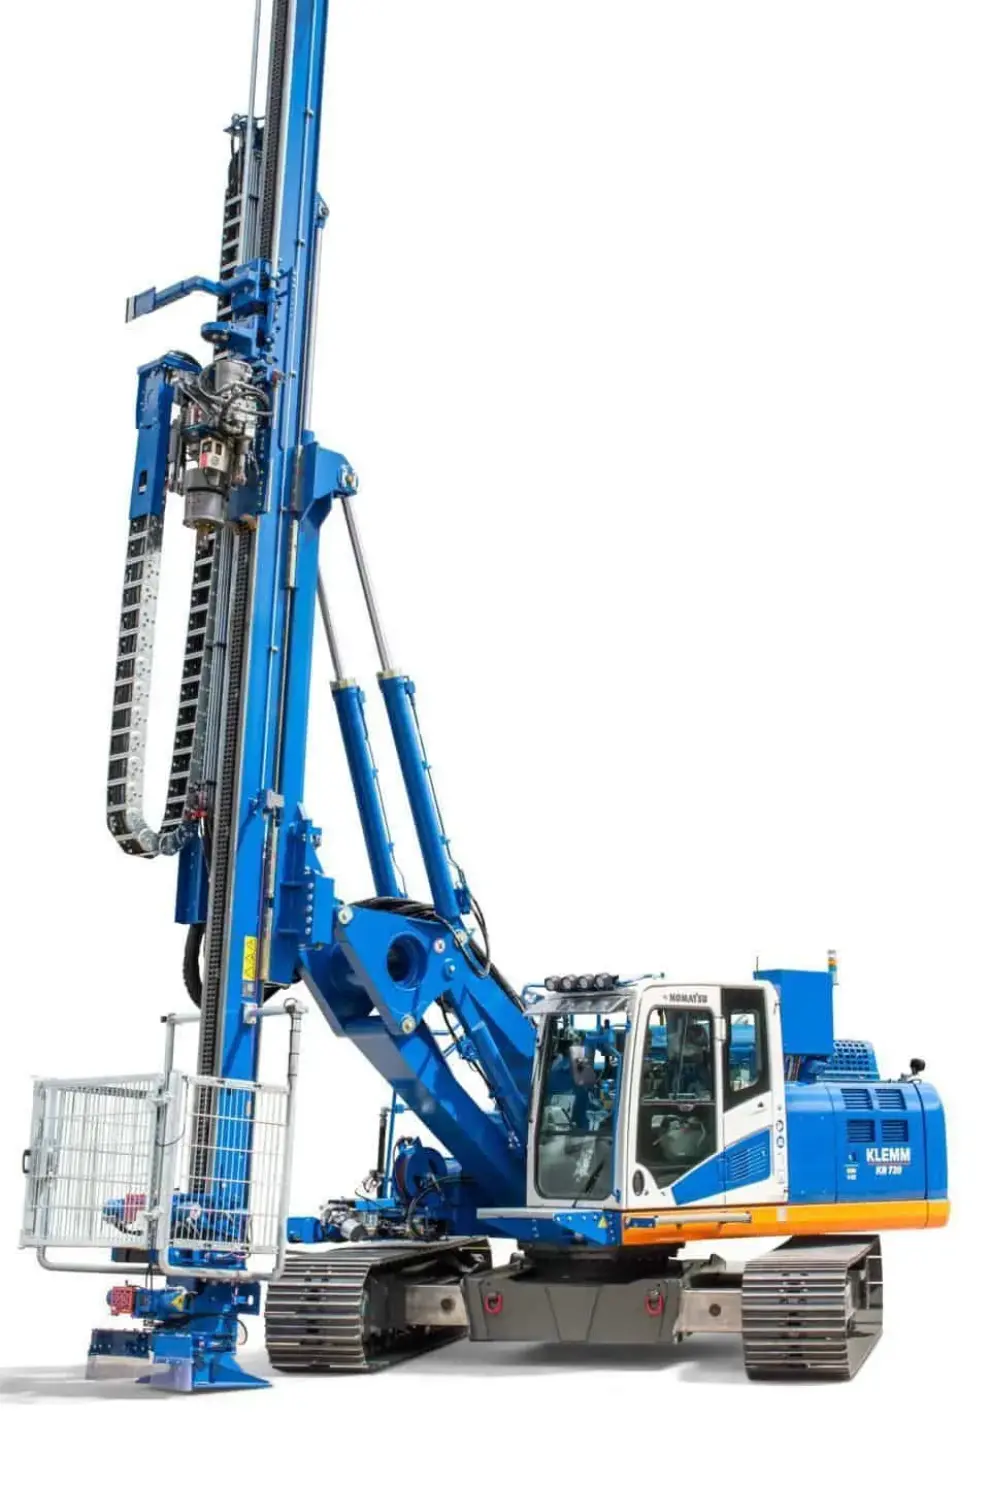 New drilling rig for HPI drilling applications: KLEMM KR 720